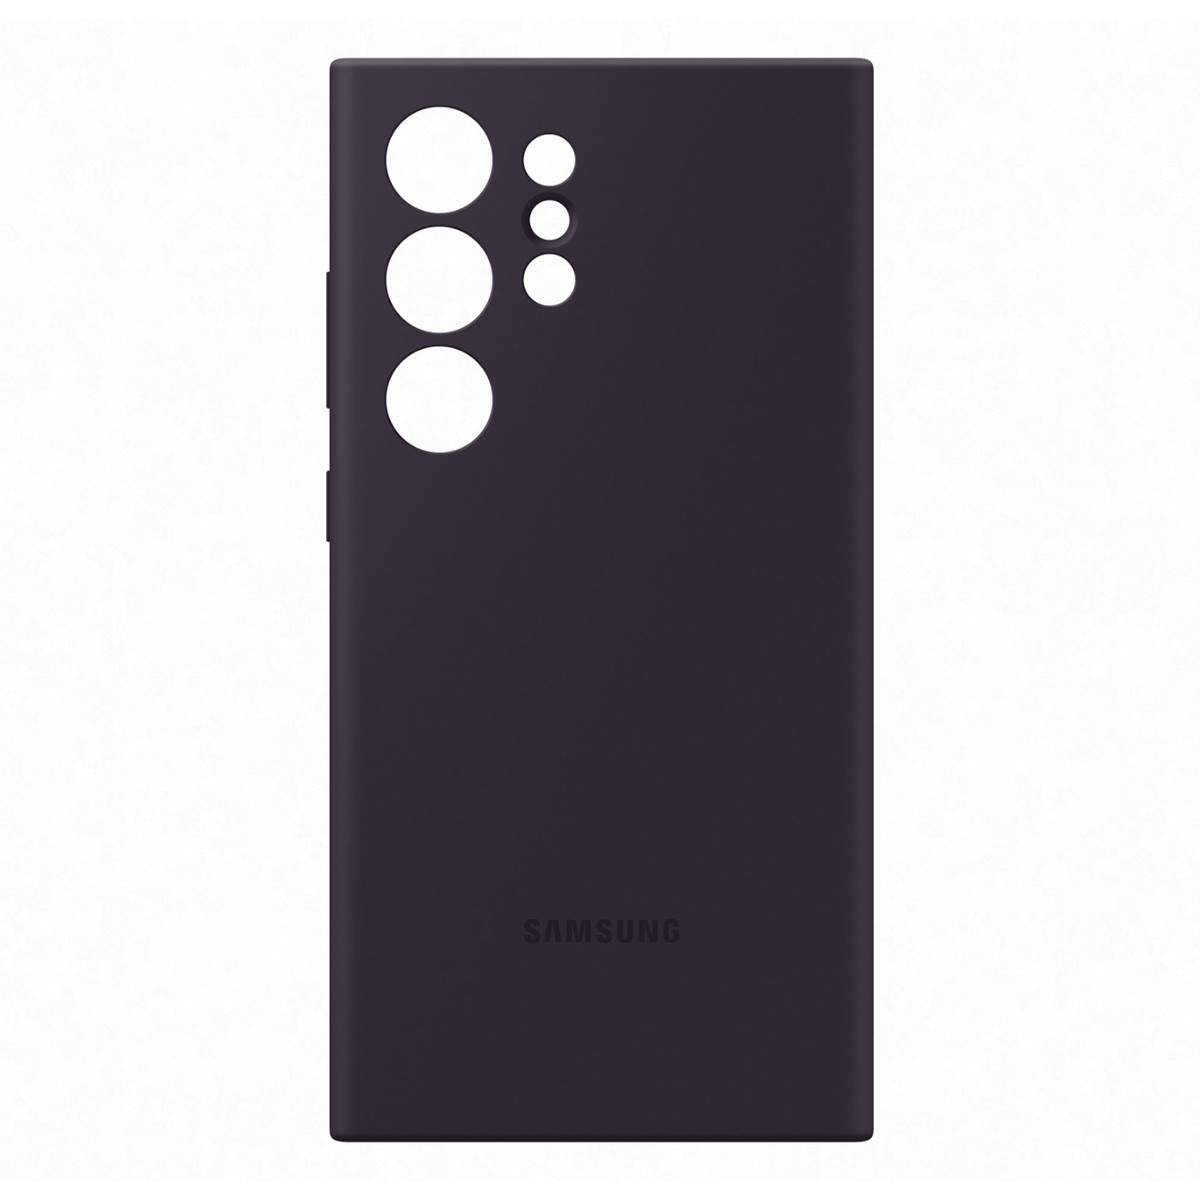 Samsung Galaxy S24 Ultra Silicone Case, Dark Violet, EF-PS928TEEGWW